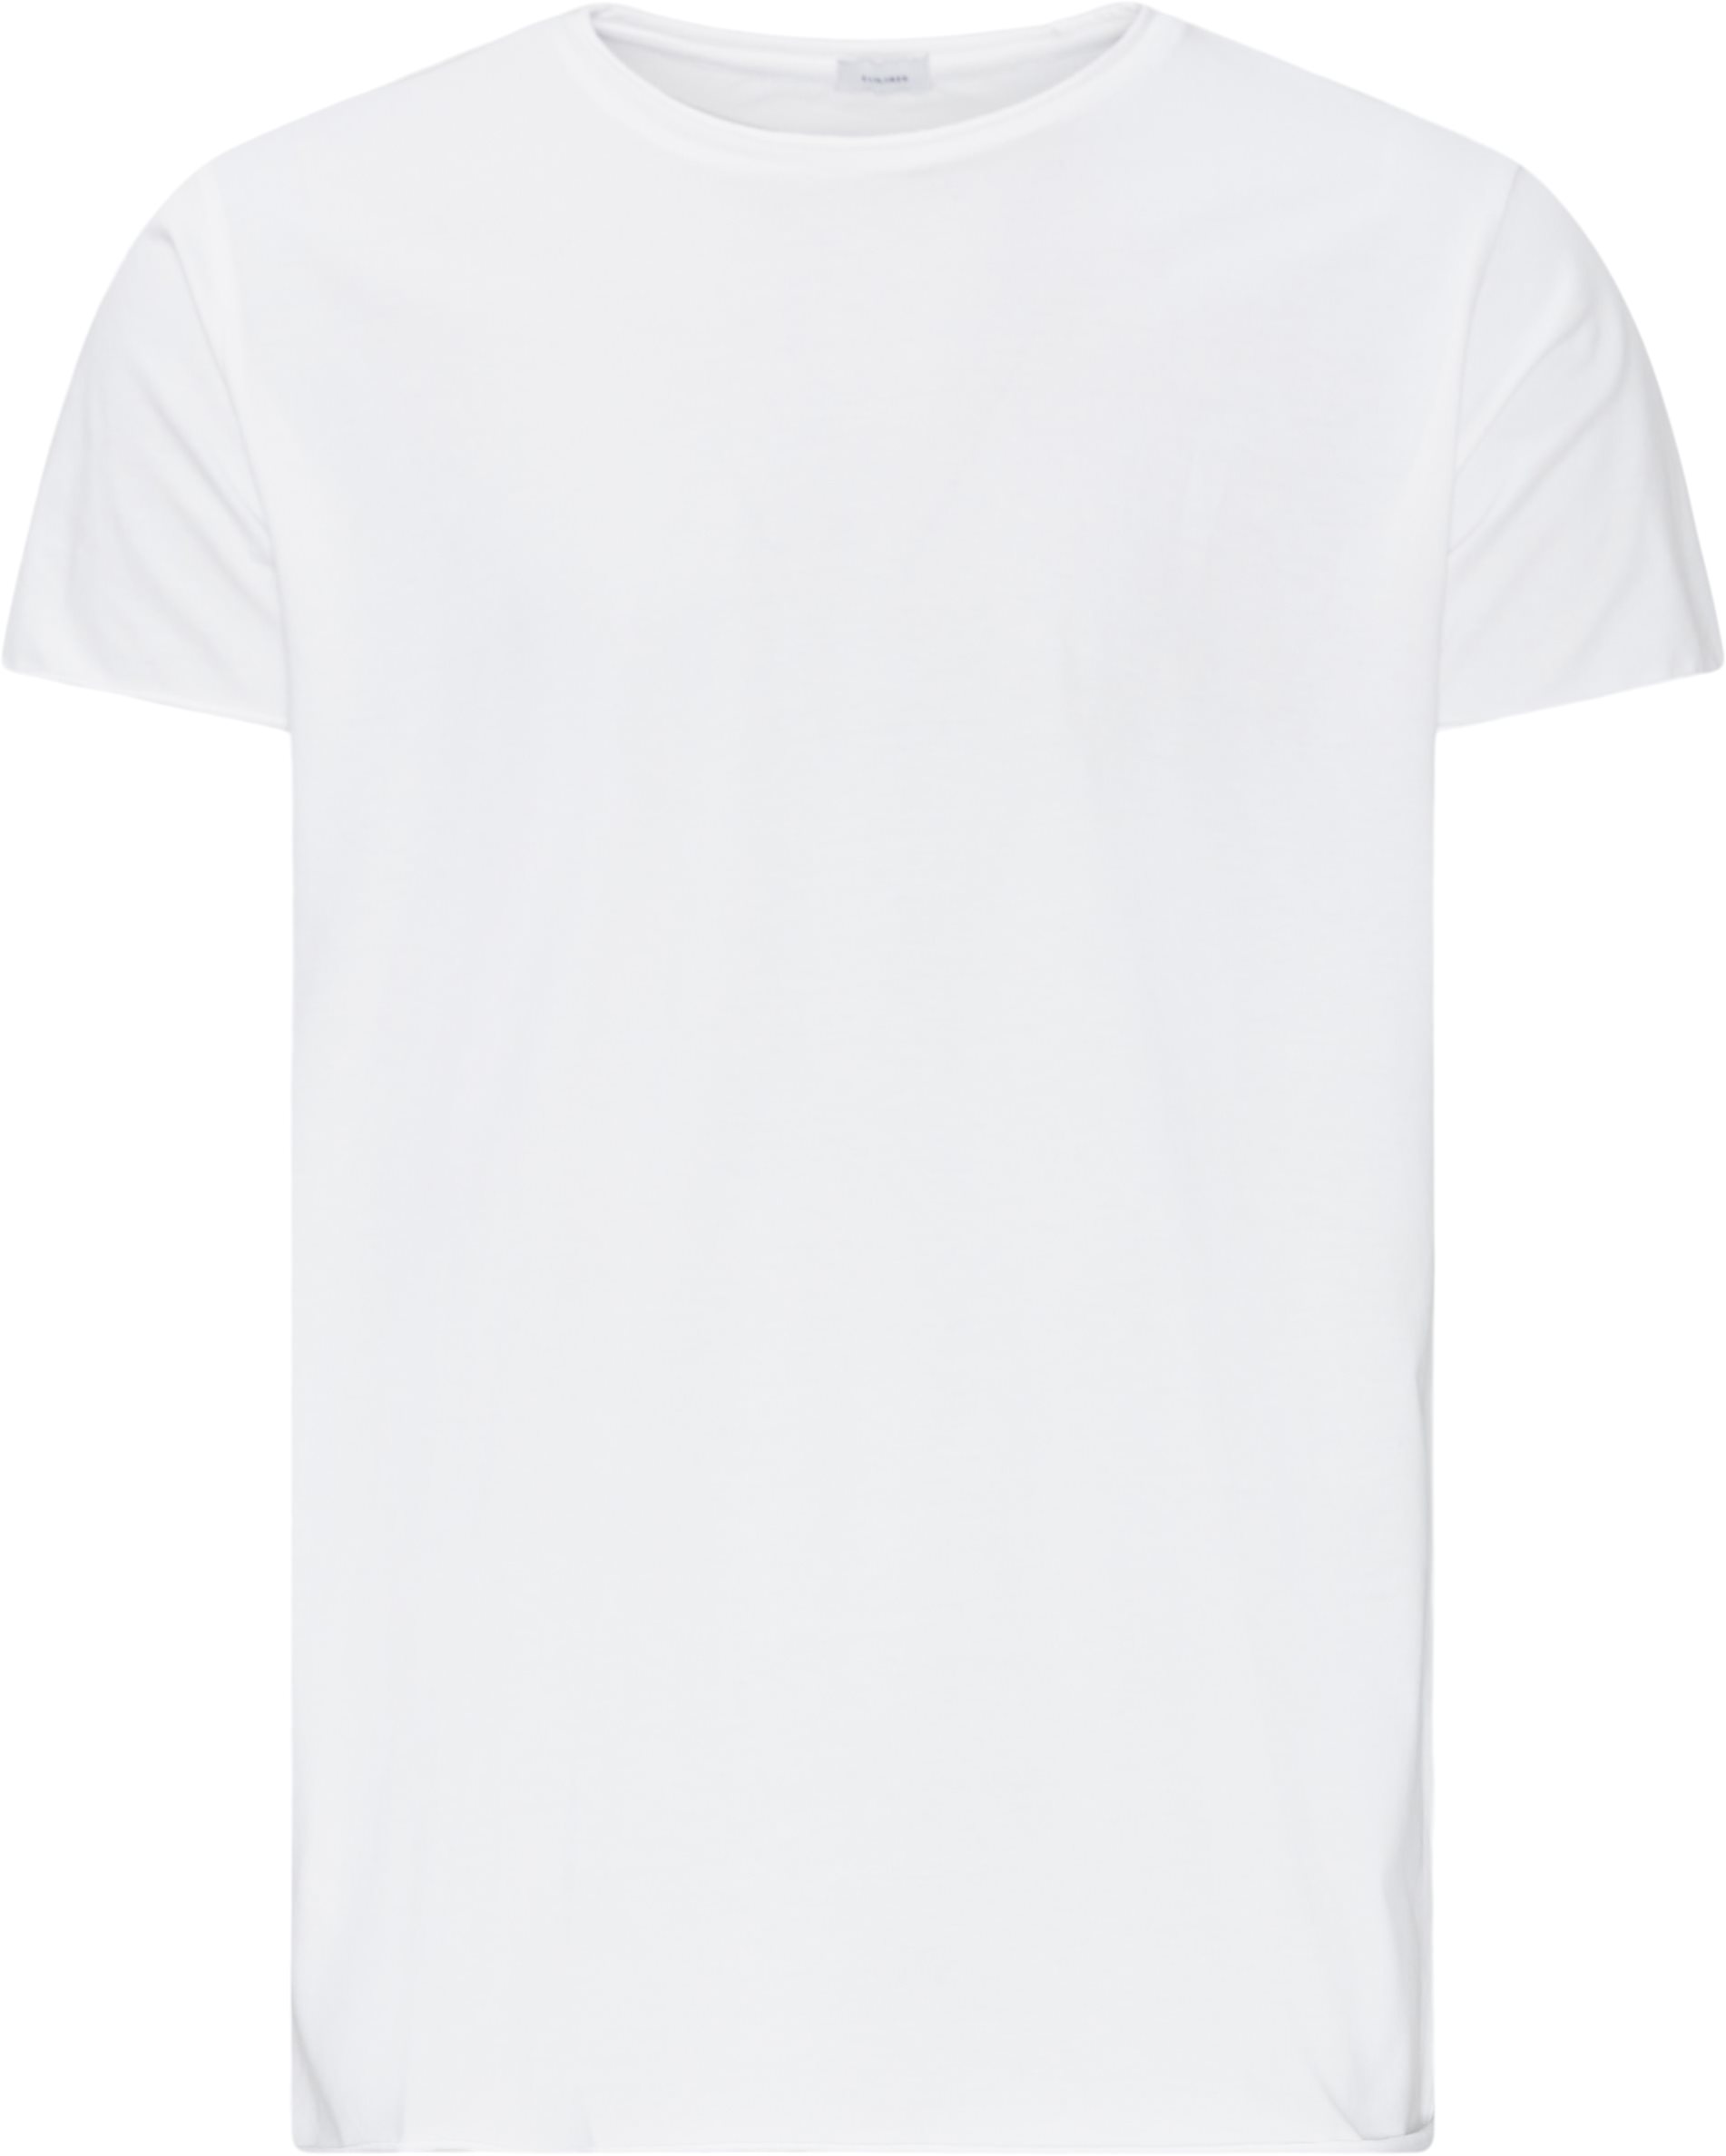 Tailored T-shirts RAW EDGE T-SHIRT White